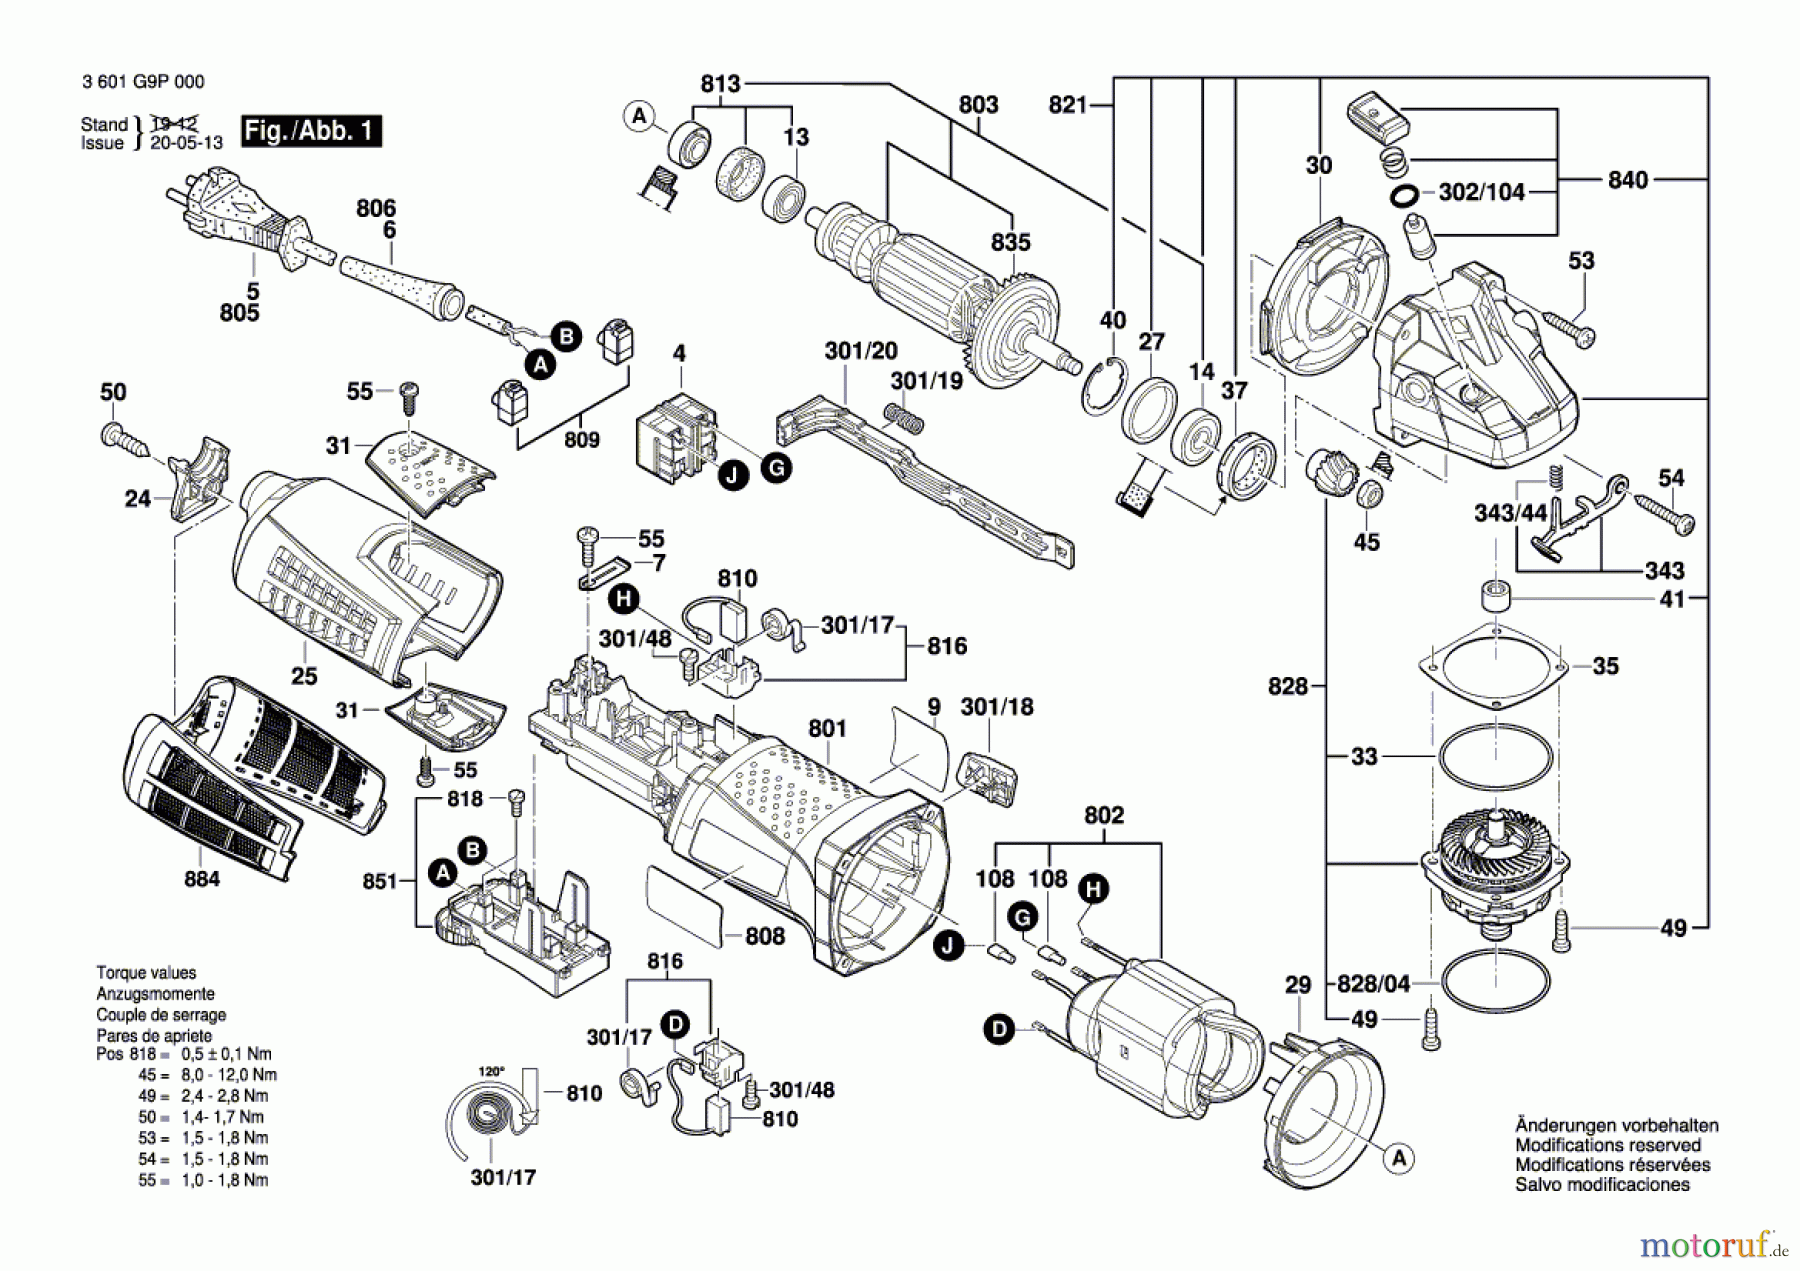  Bosch Werkzeug Winkelschleifer GWS 19-125 CIE Seite 1